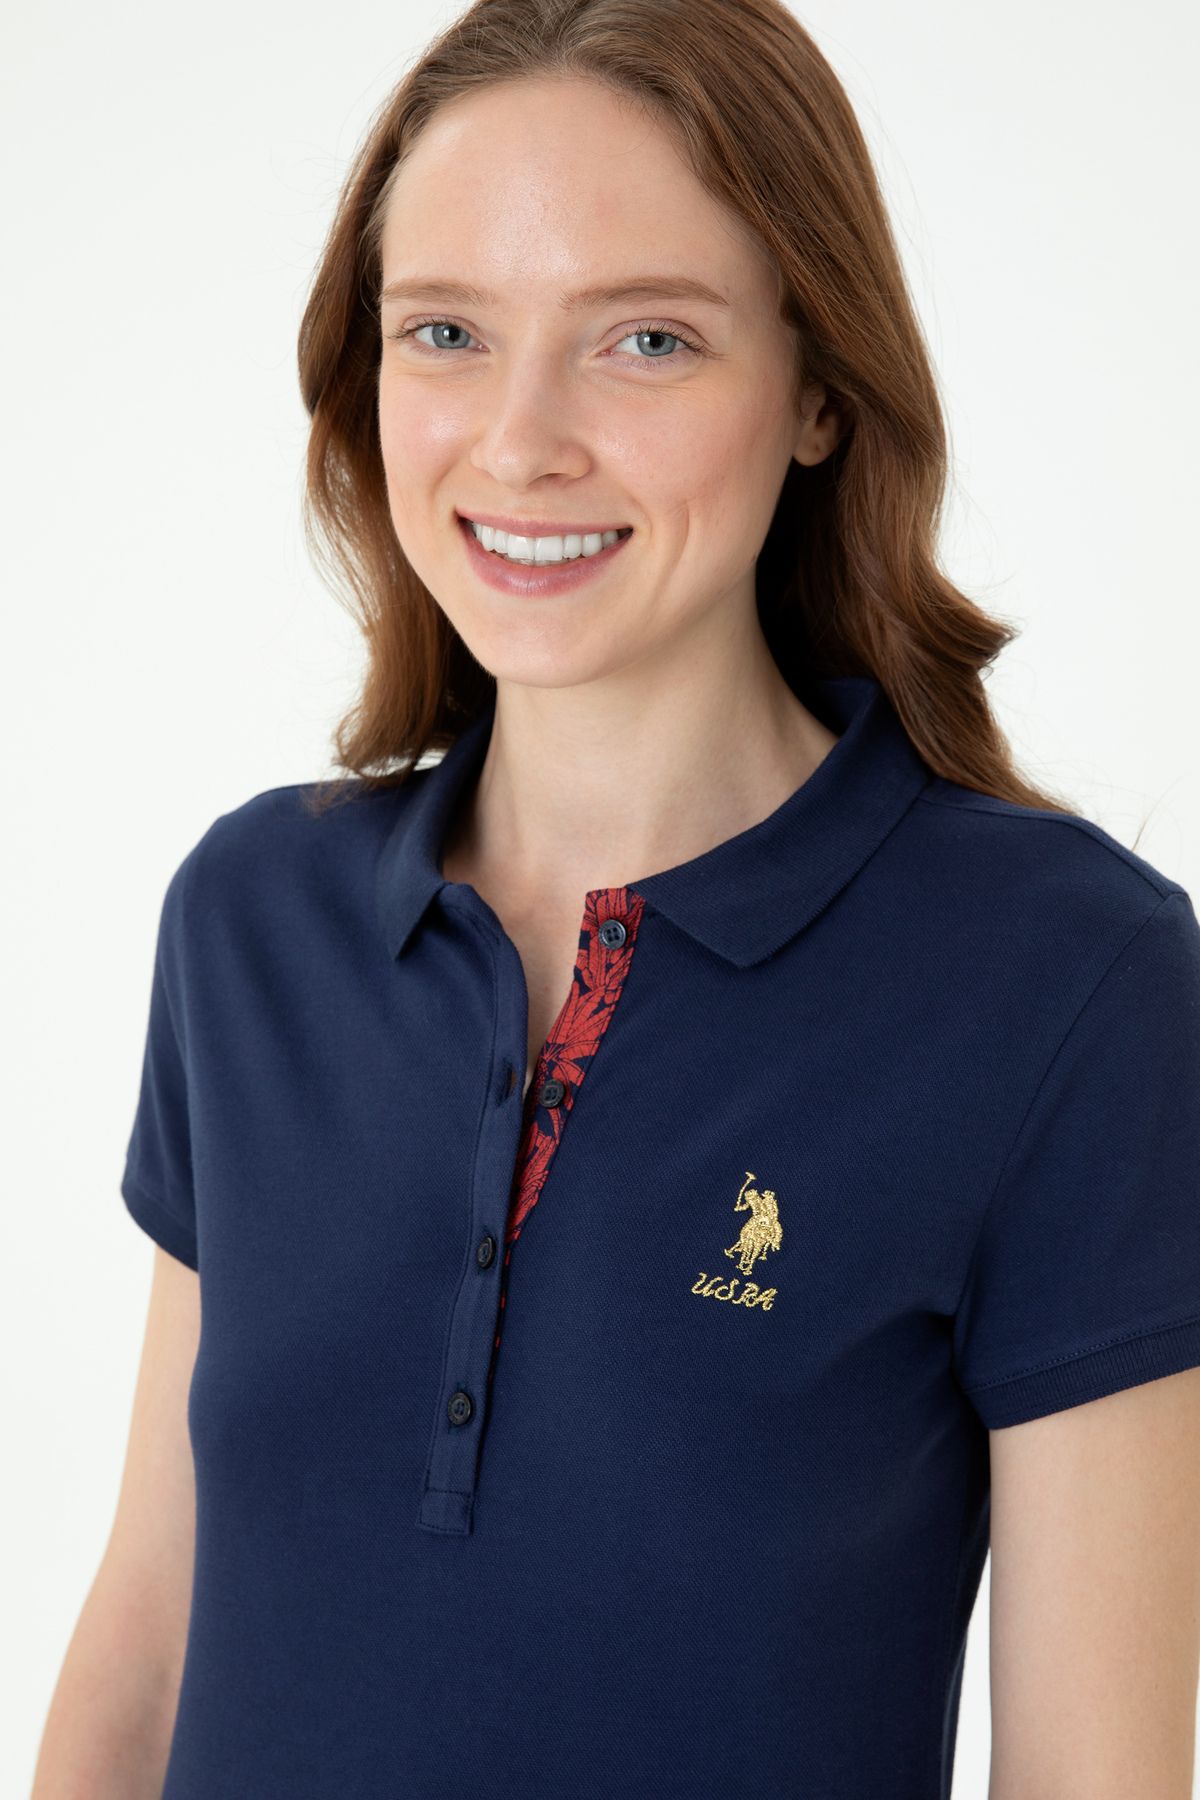 U.S. Polo Assn. Kadın Lacivert Polo Yaka T-shirt ARİEN GİYİM